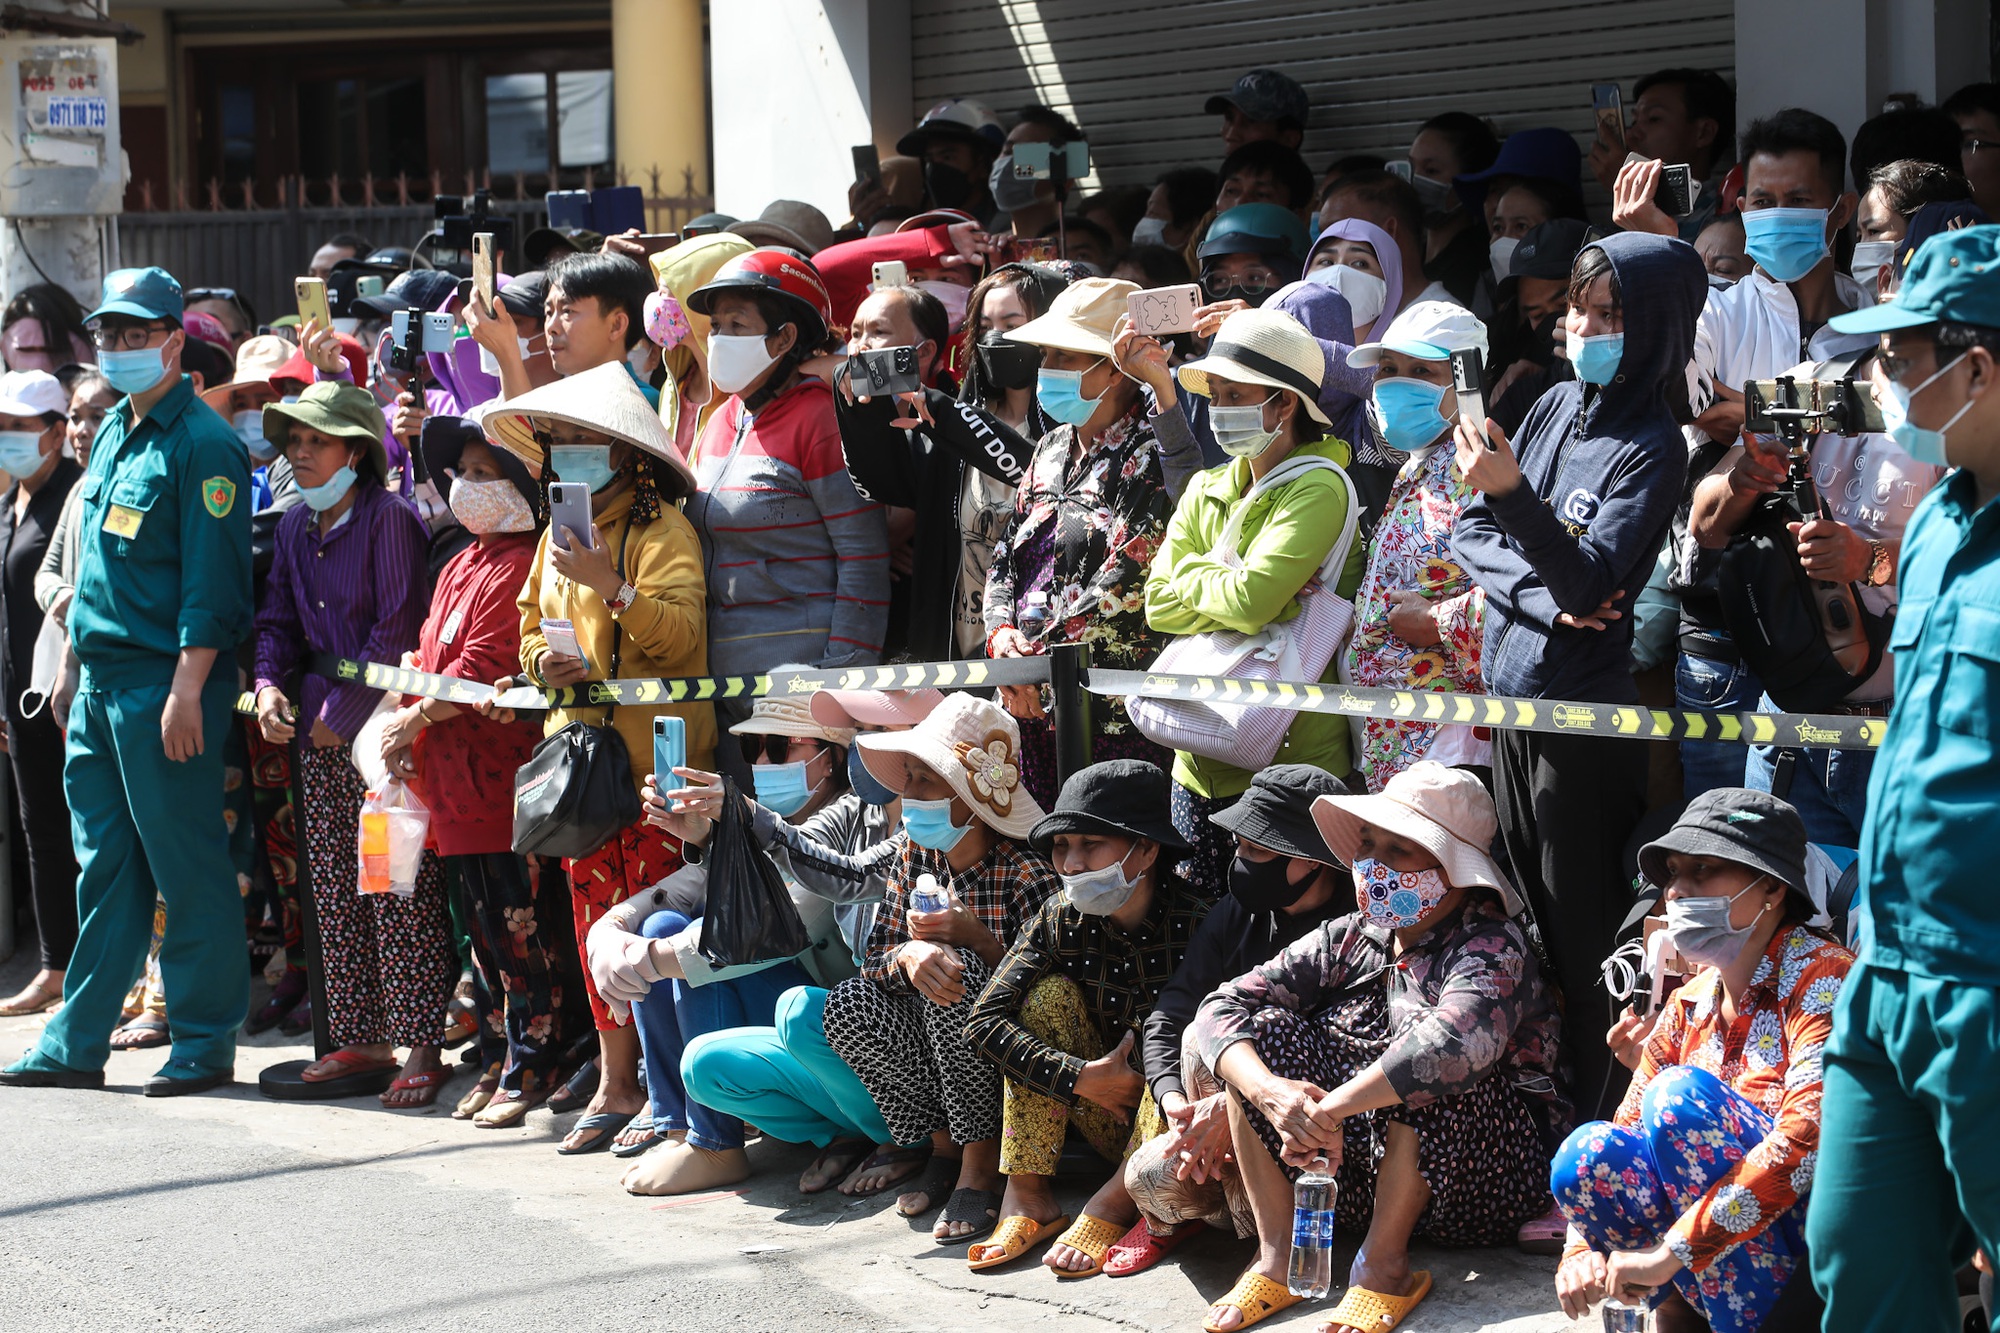 Hàng nghìn người tập trung kín đường, cảnh chen lấn hỗn loạn tại lễ đưa tang NS Vũ Linh - Ảnh 8.